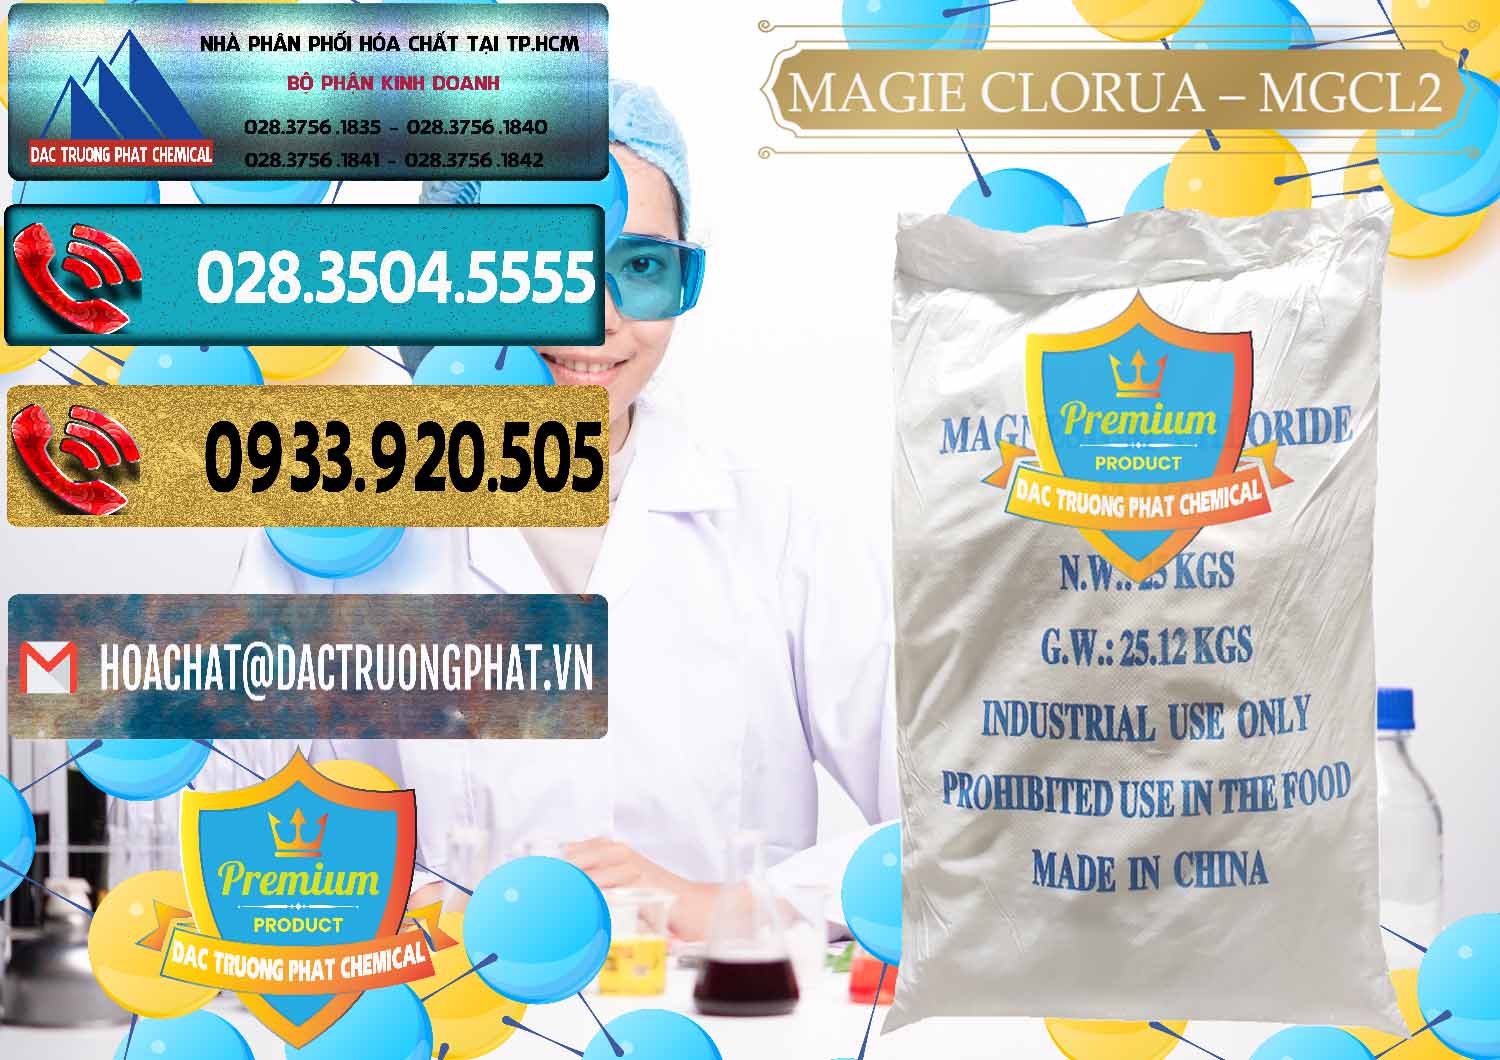 Nơi chuyên phân phối & bán Magie Clorua – MGCL2 96% Dạng Vảy Trung Quốc China - 0091 - Cty chuyên cung cấp và bán hóa chất tại TP.HCM - hoachatdetnhuom.com